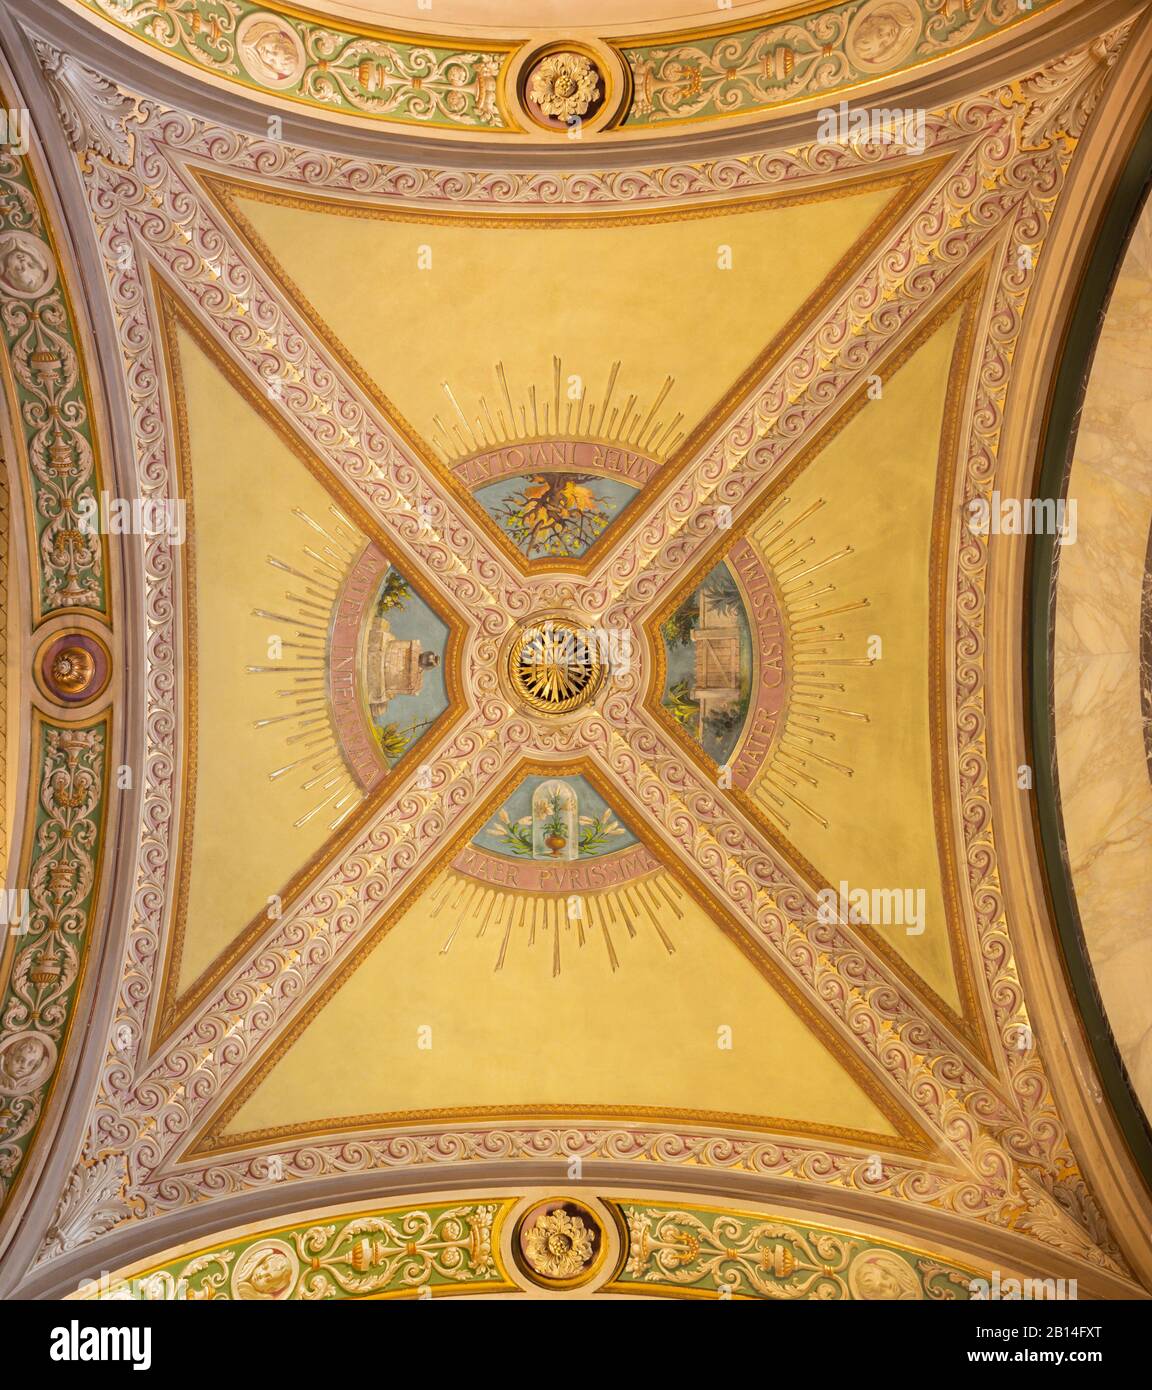 Turín, Italia - 15 de marzo de 2017: el detalle de los frescos en el techo en la iglesia Basílica María Auxiliadora por artista desconocido de 19.%. Foto de stock